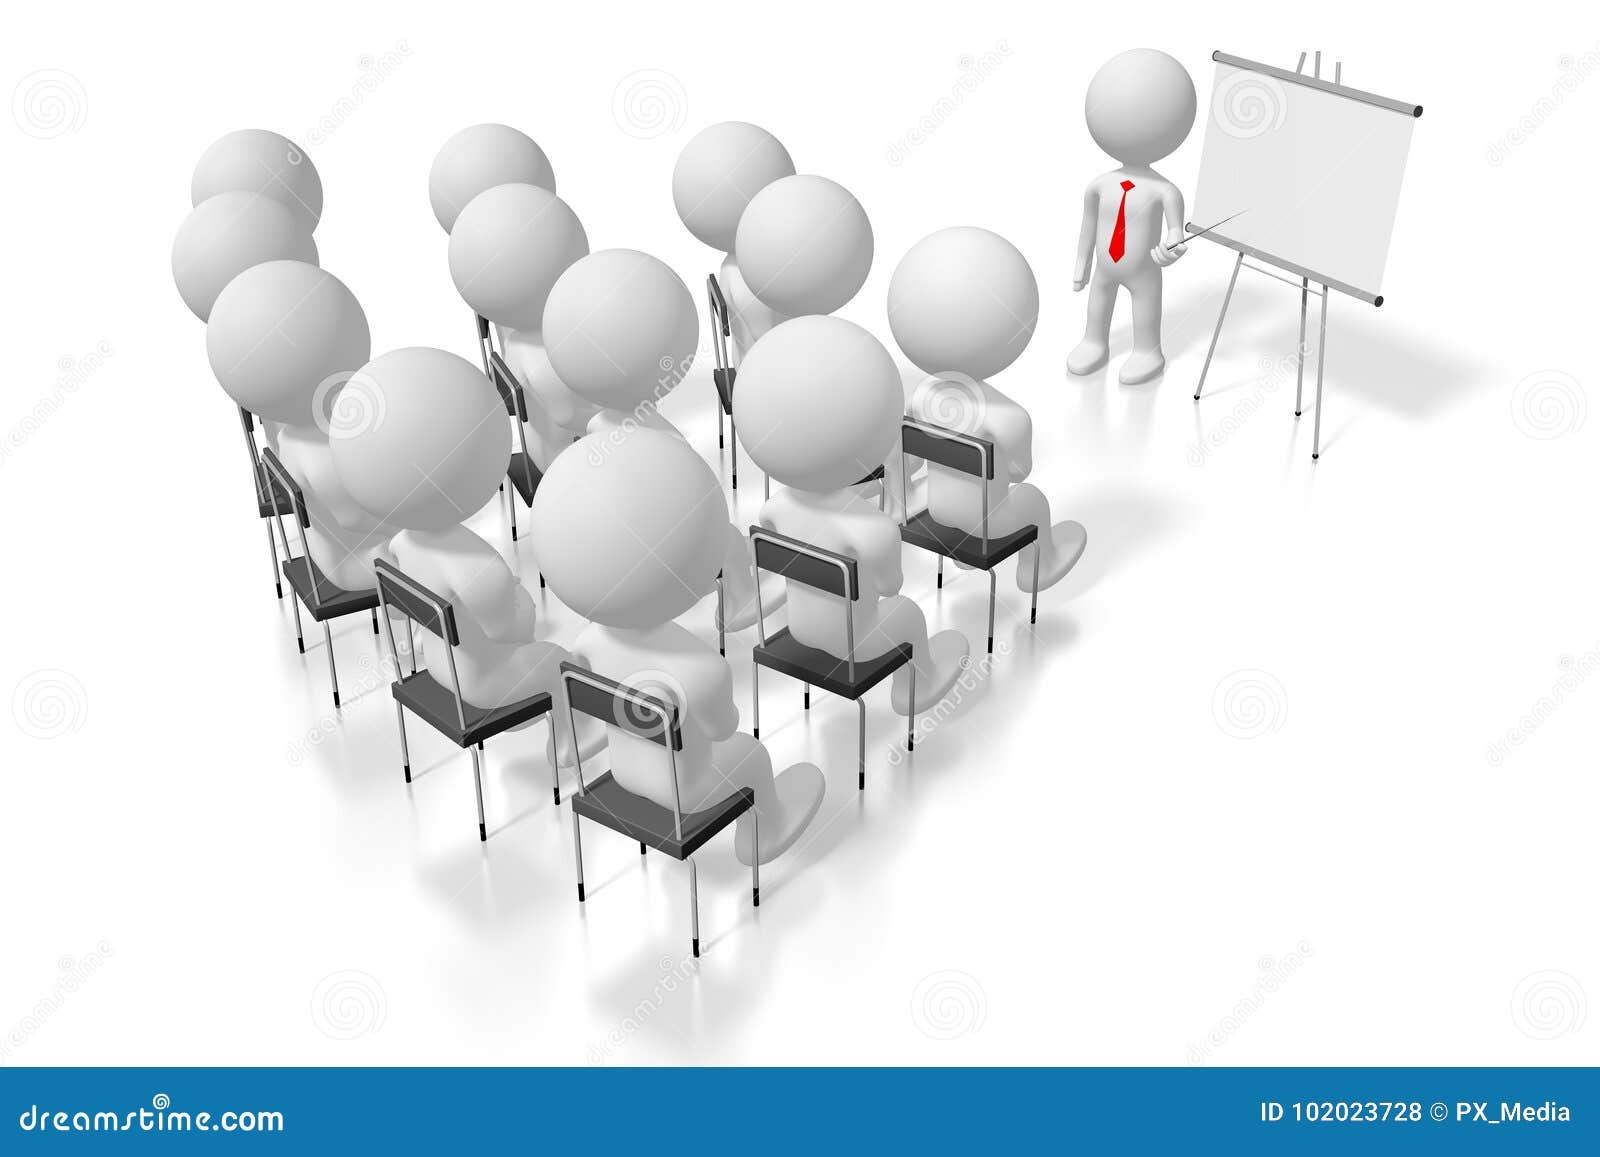 Concept De Conference D Etude De Cas De Formation Du Seminaire 3d Illustration Stock Illustration Du People Classroom